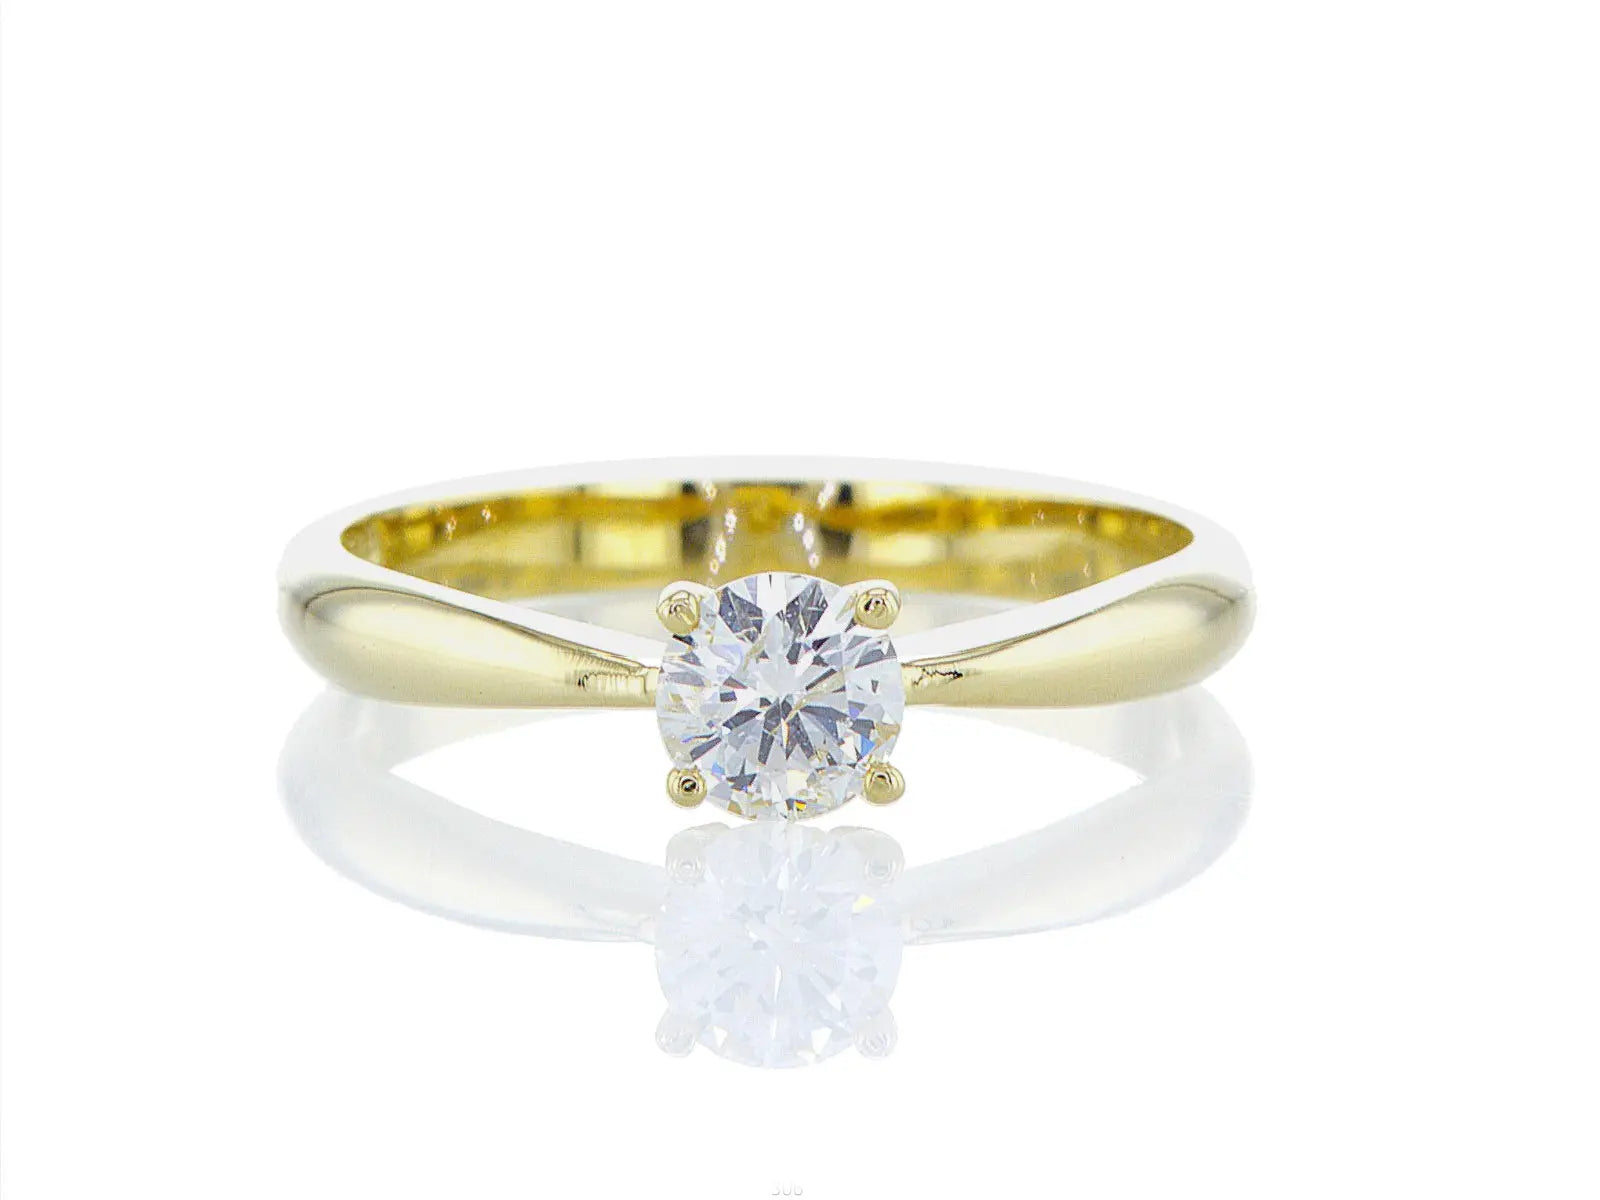 טבעת קלאסית שנותנת הרבה כבוד ליהלום טבעי היפה שמשובץ בה זהב צהוב 14 קראט - Fermond Jewelry.